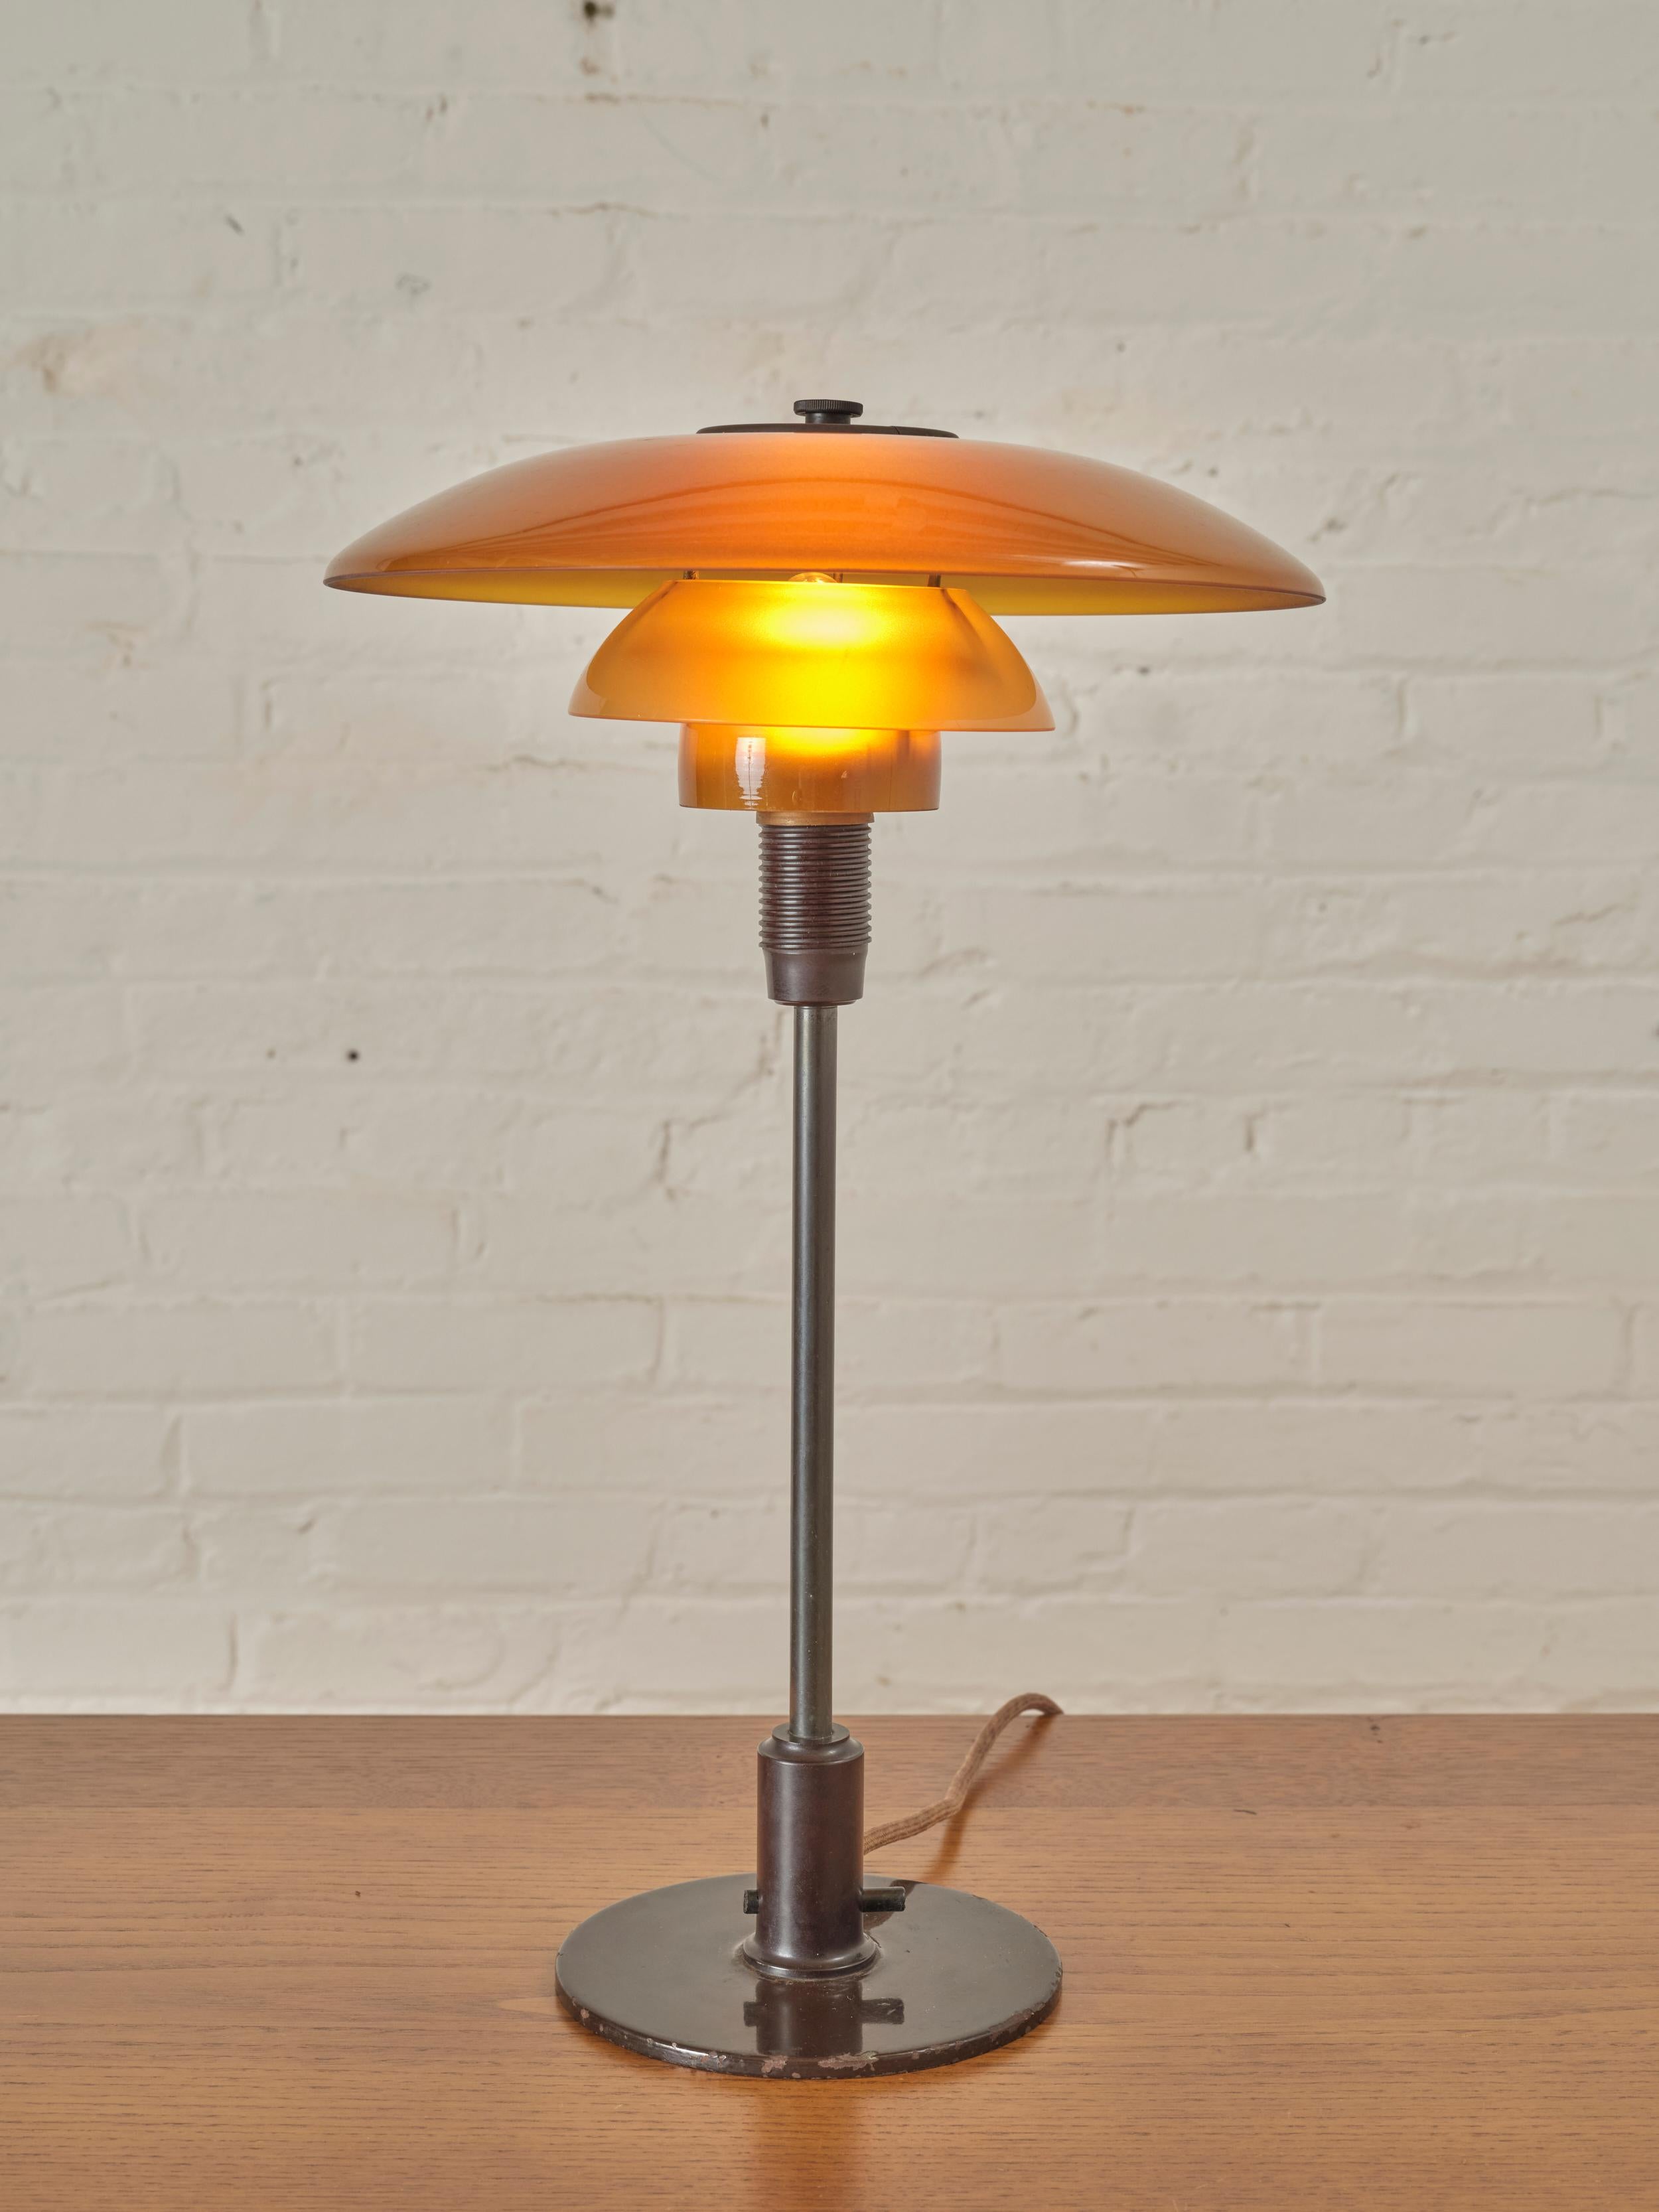 PH 4/3 Table von Poul Henningsen für Louis Poulsen, mit einem 3-Schirm-Lampensystem aus mundgeblasenem Braunglas.

